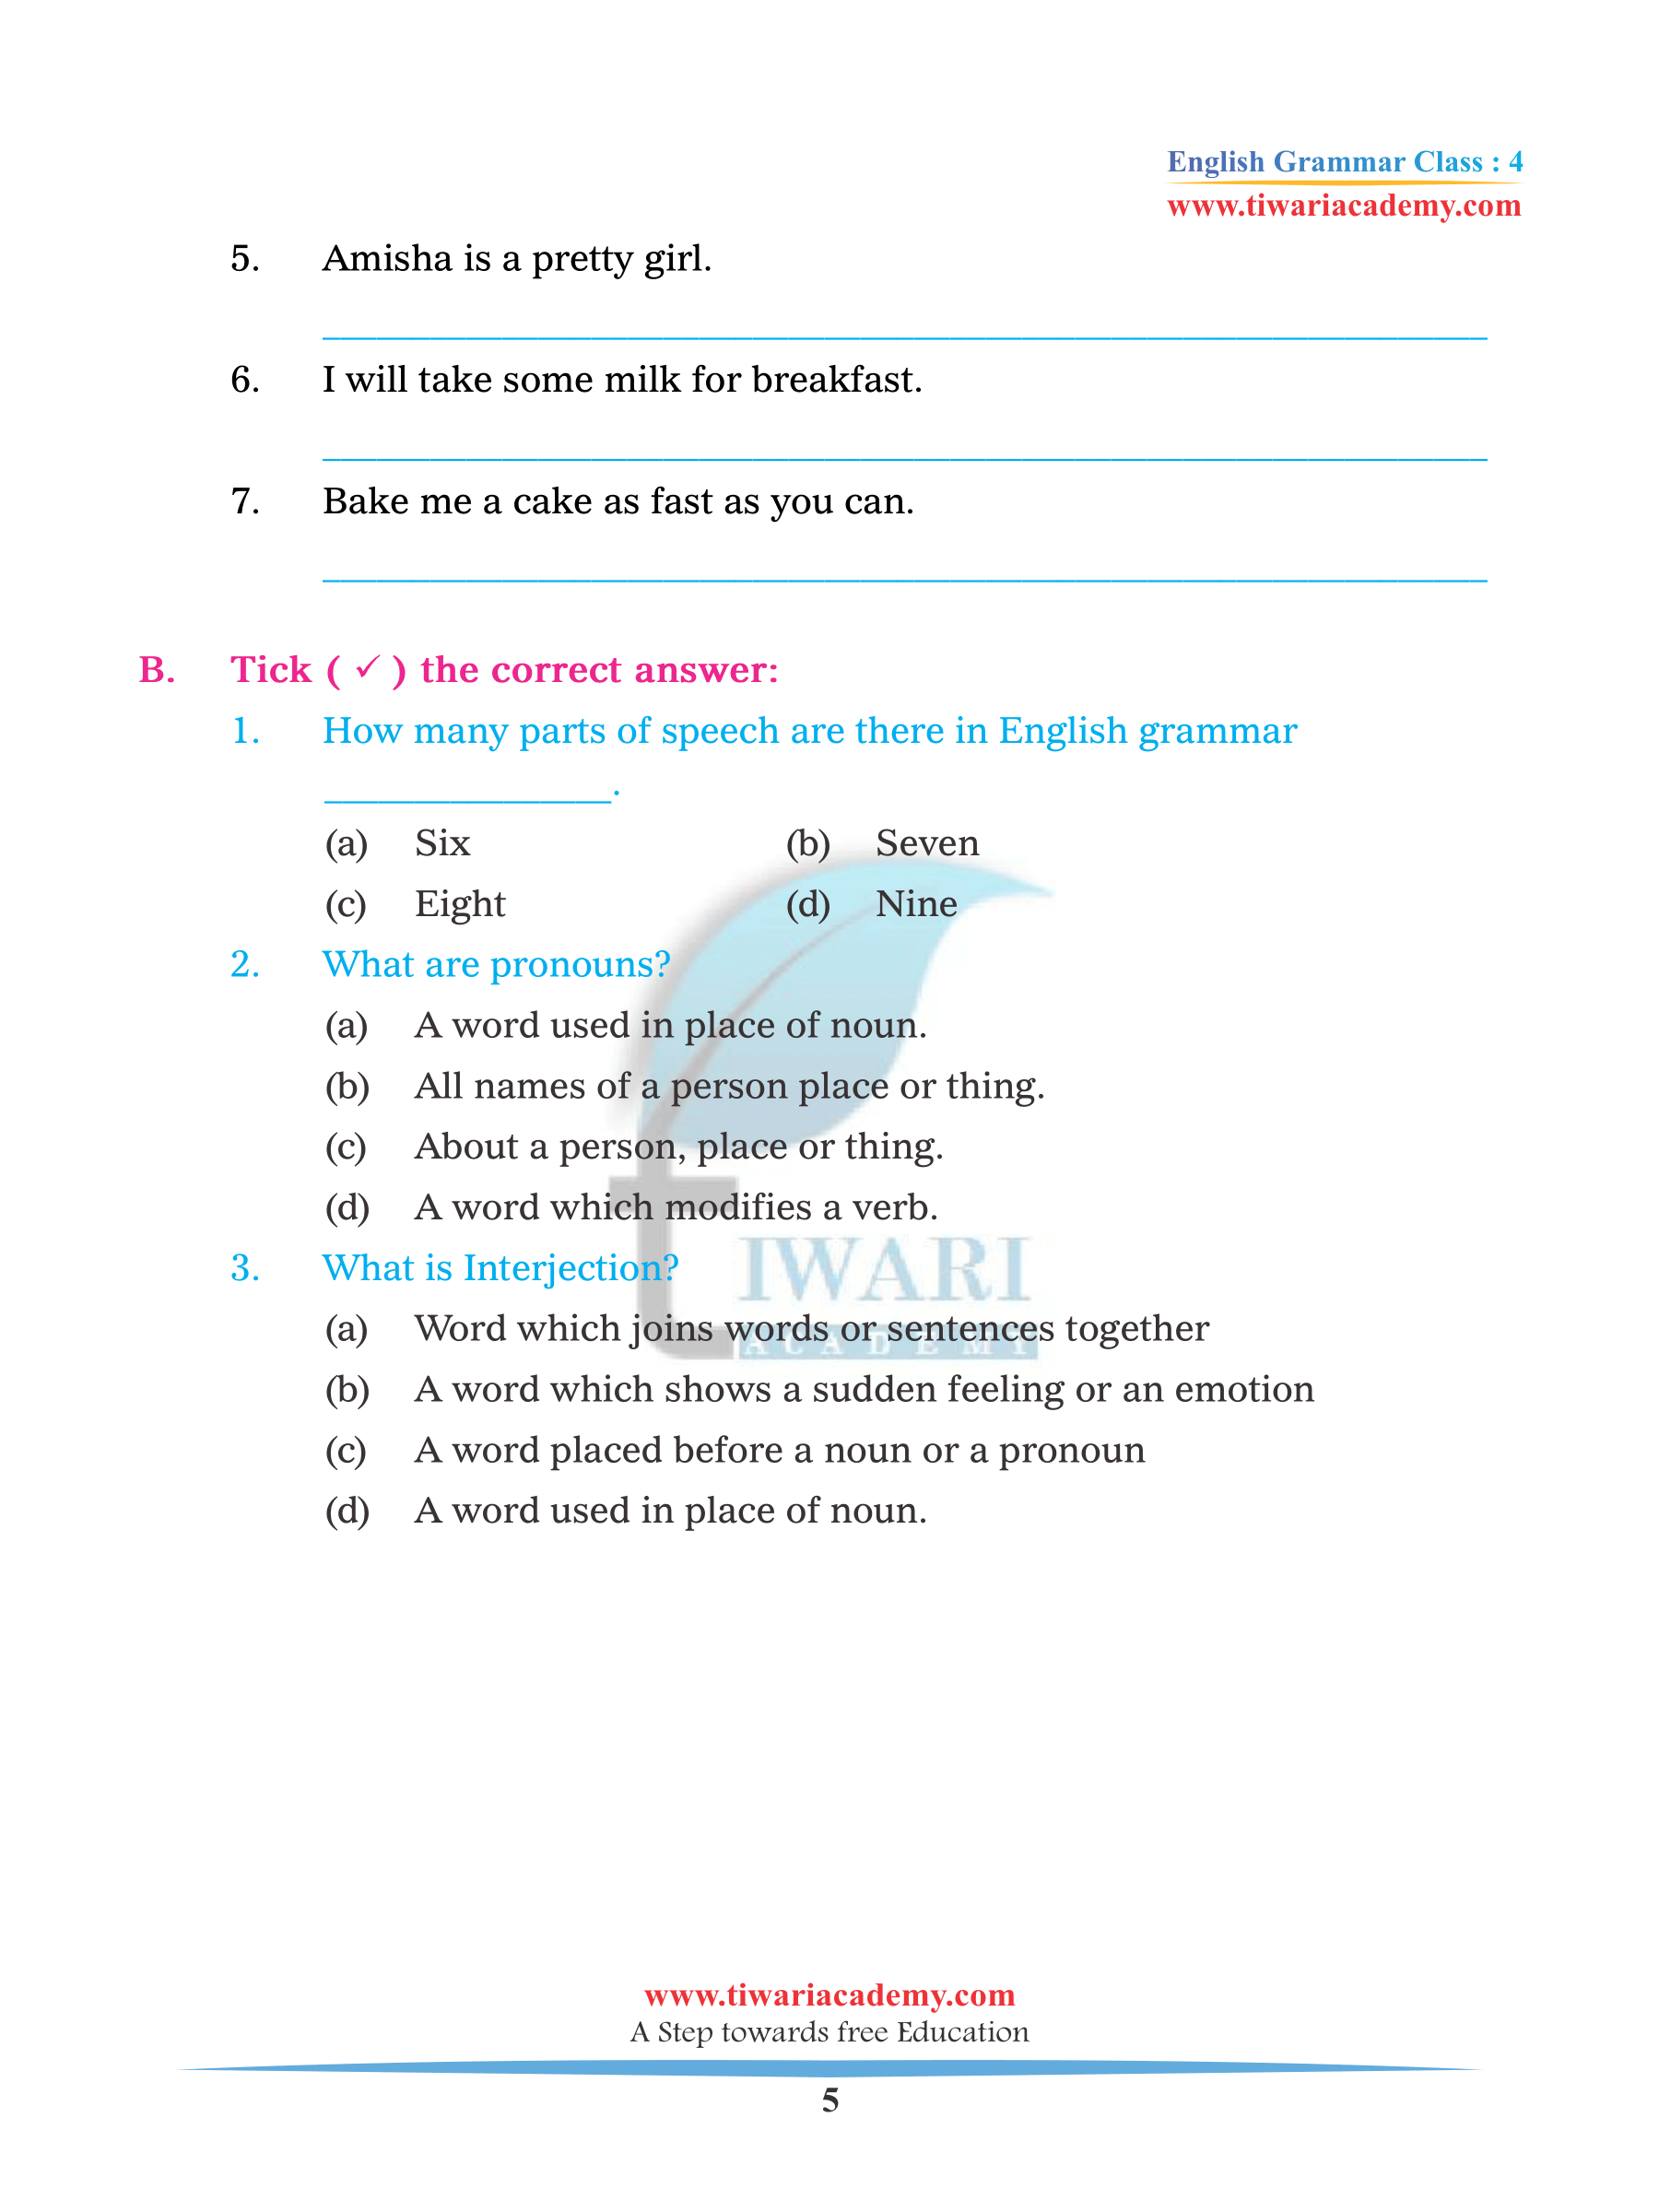 Class 4 English Grammar Chapter 4 assignments